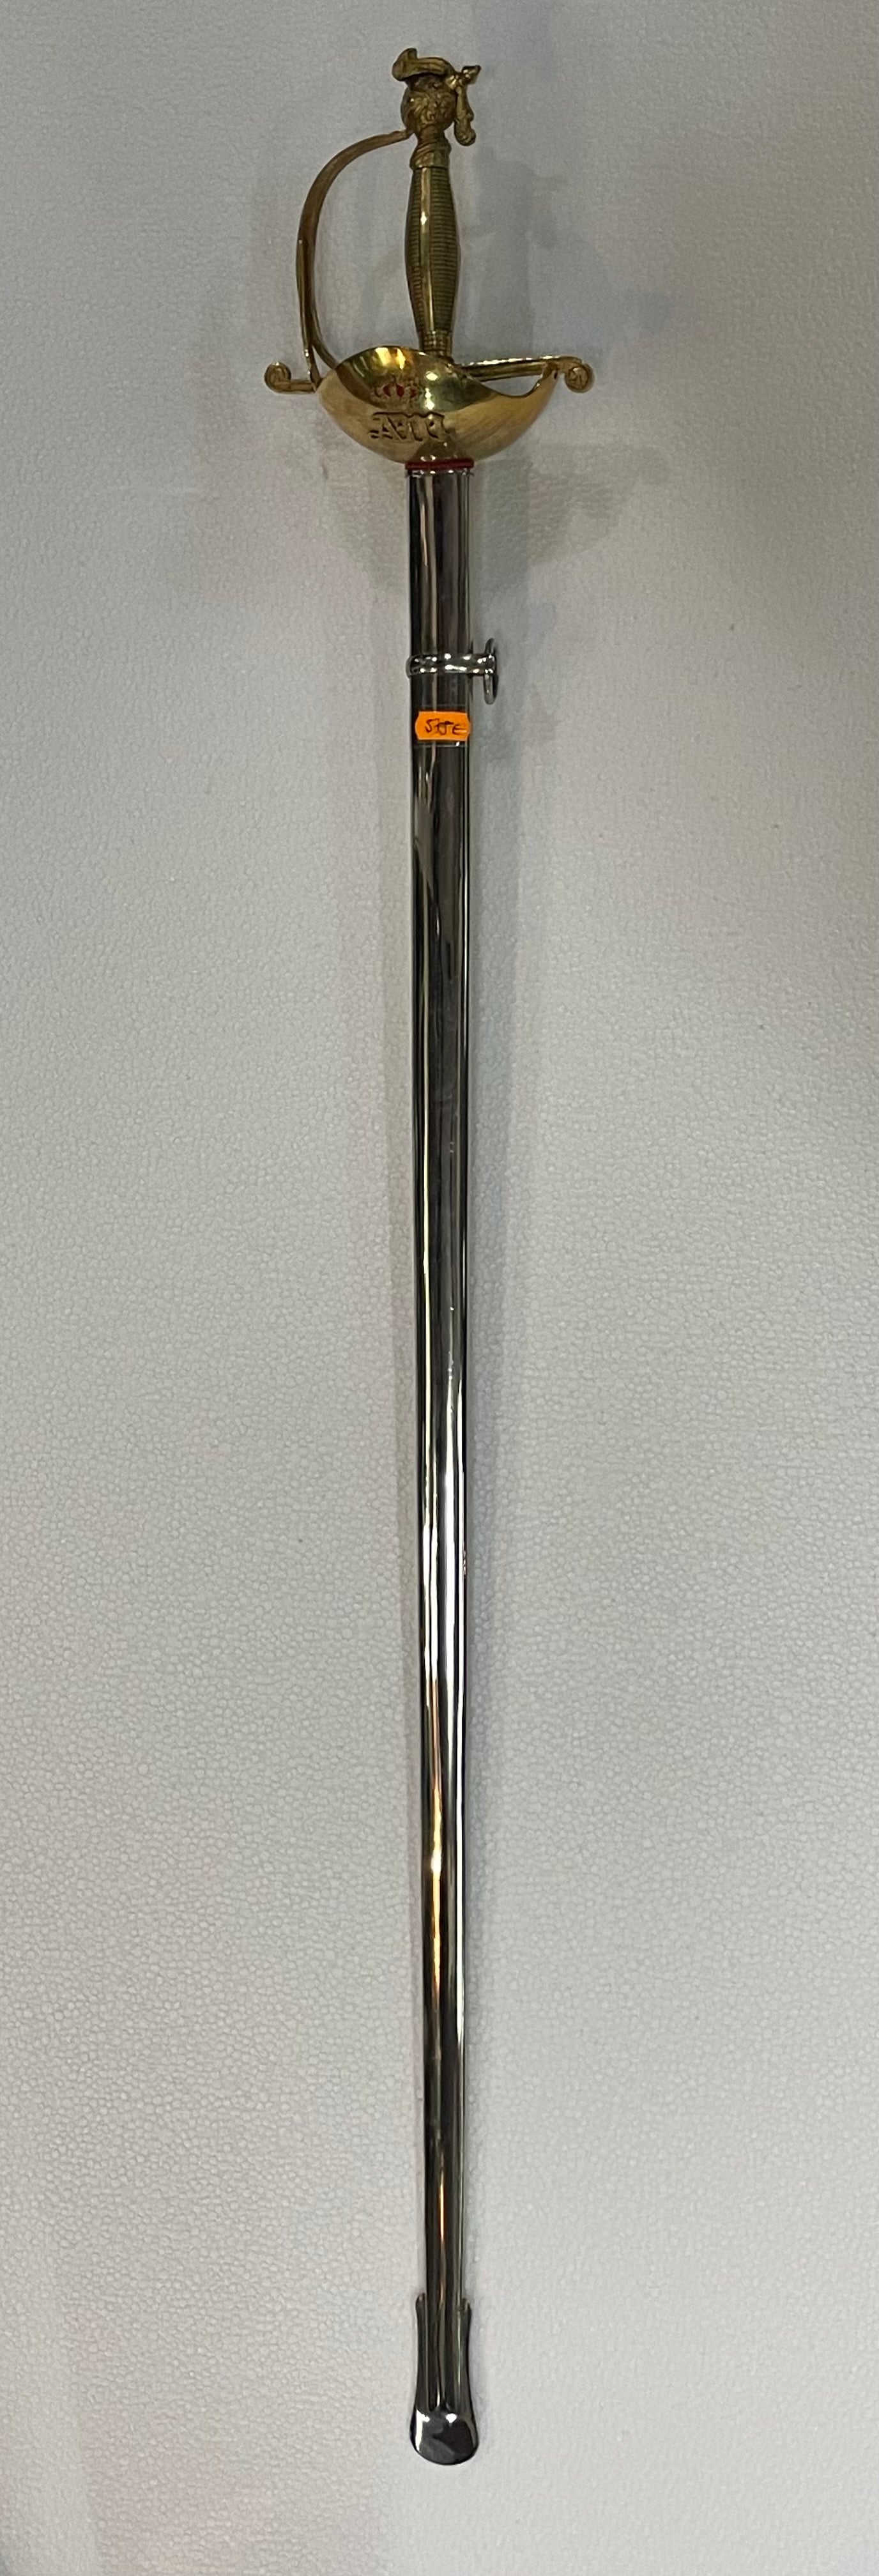 espada ceremonial de capitulo nobiliario español